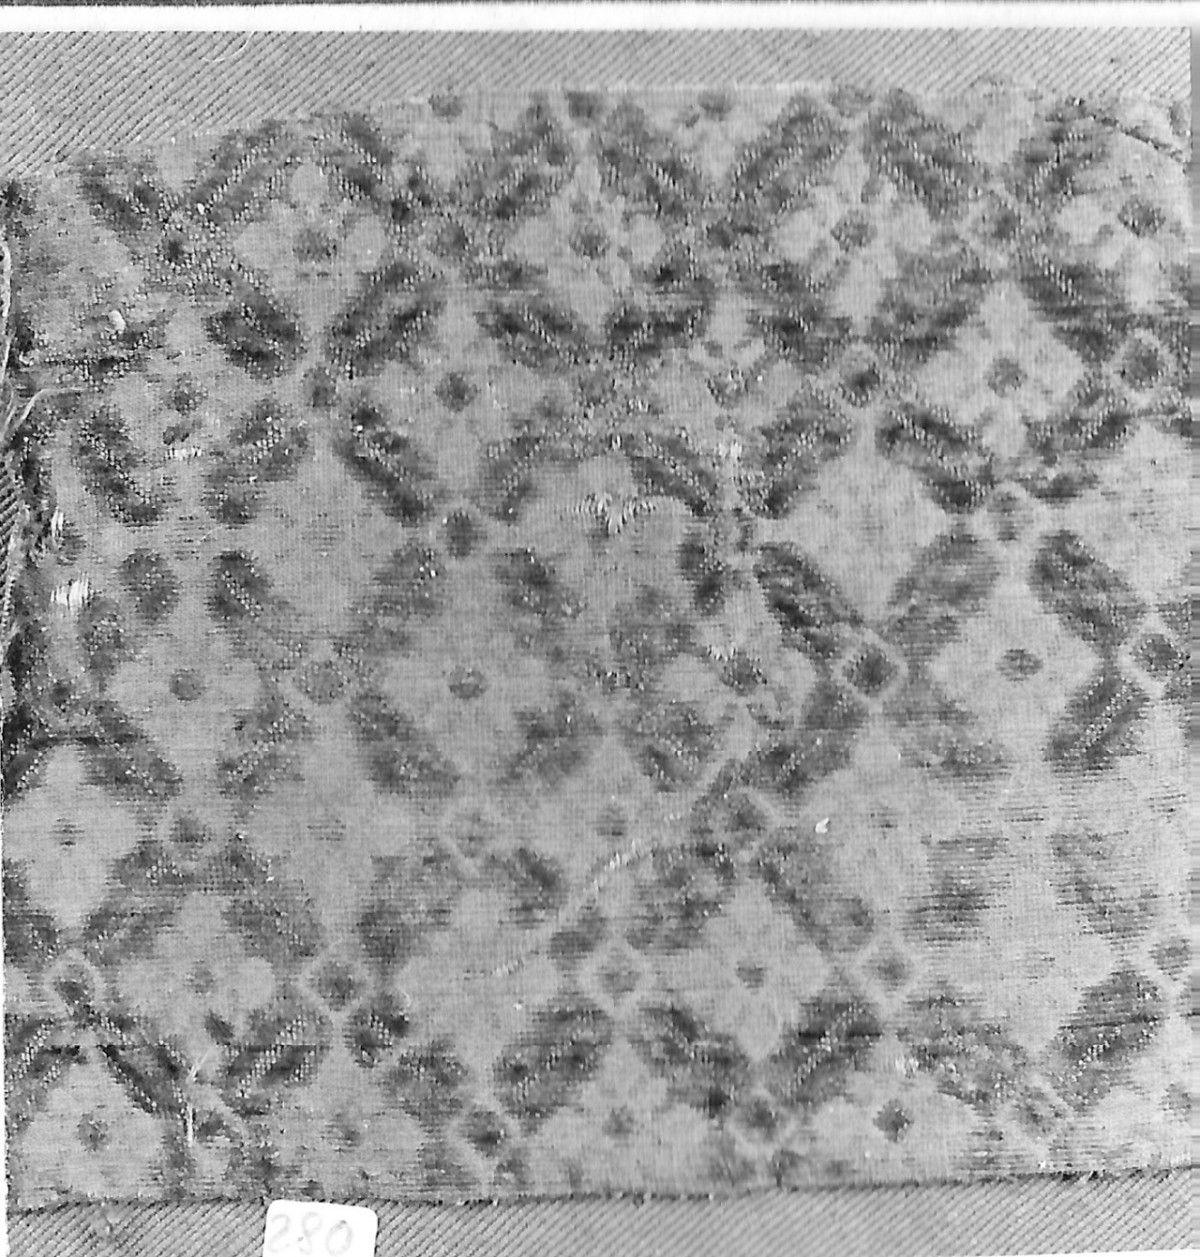 motivi decorativi geometrici e vegetali stilizzati (tessuto, frammento) - manifattura italiana (secc. XVI/ XVII)